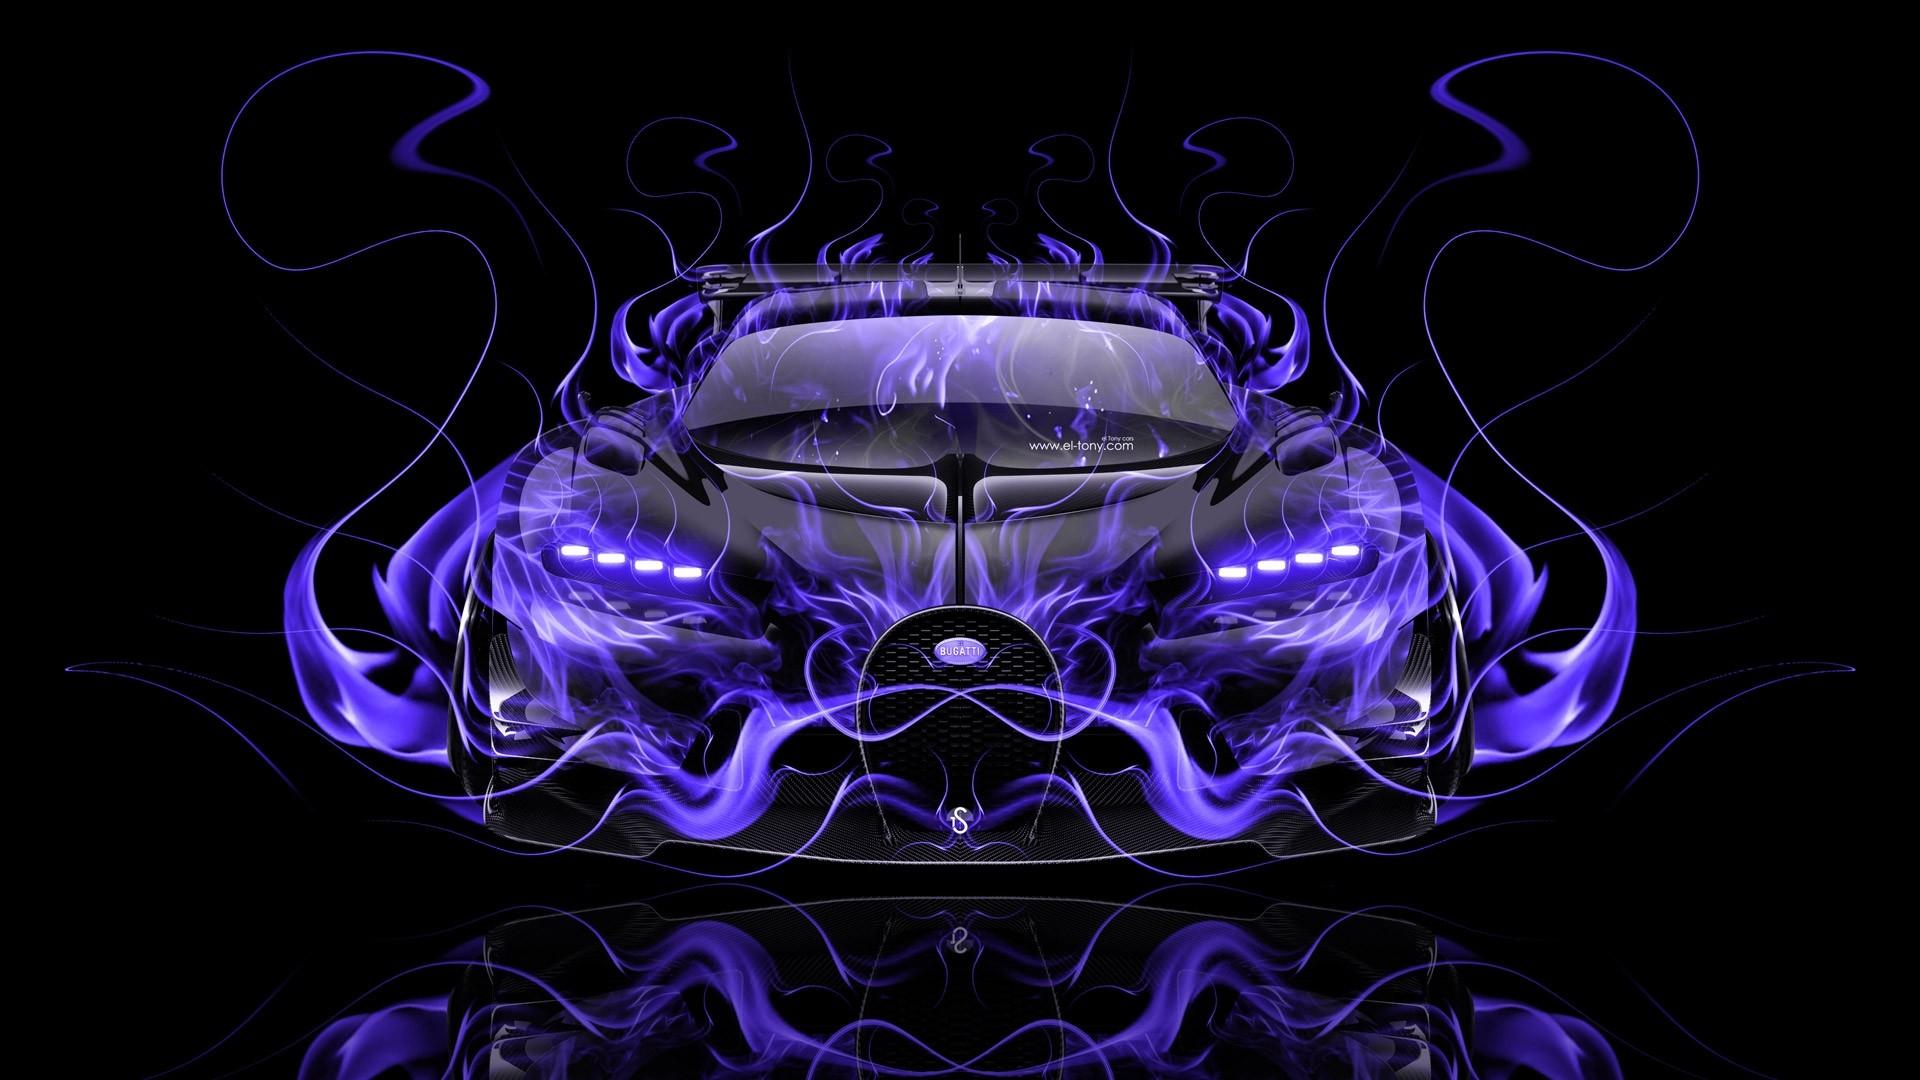 Lamborghini Cool Fire Picture